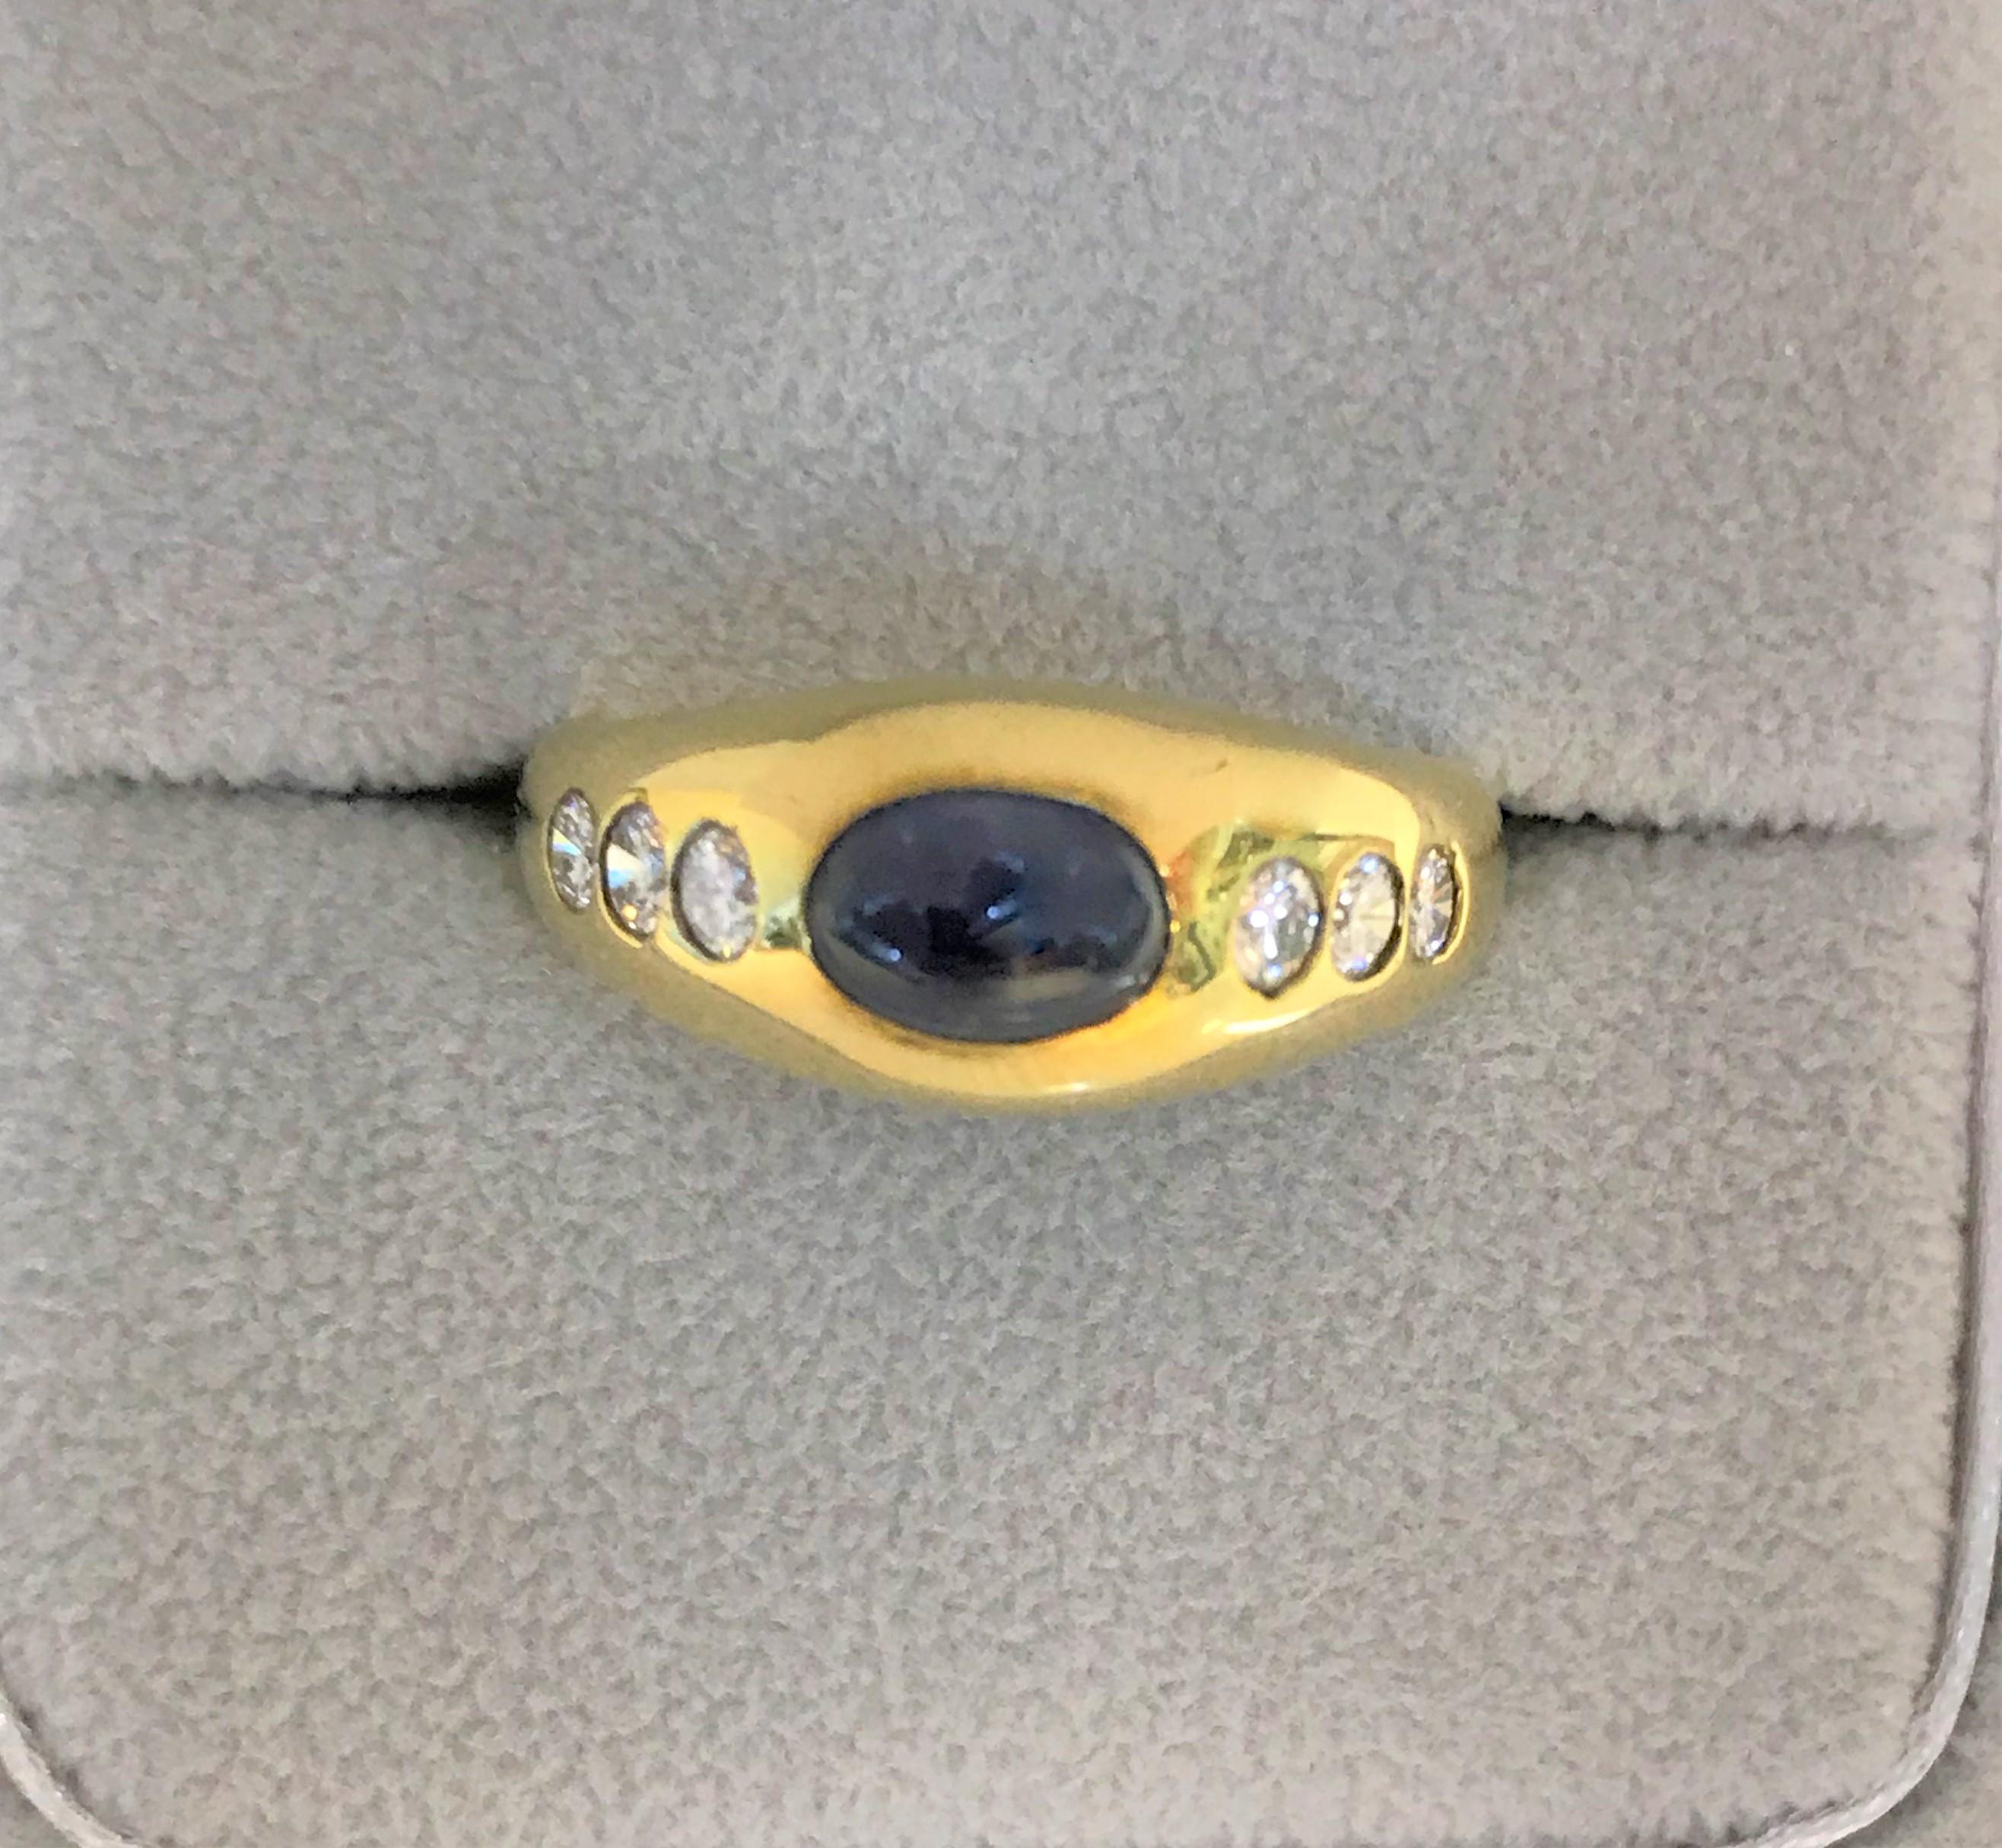 Bague de style gitan jaune 14 carats
Saphir bleu ovale cabochon d'environ 6 mm x 4,5 mm x 3,5 mm, environ 1,40 carat, serti horizontalement.
6 diamants ronds d'un poids total d'environ .36
Estampillé 